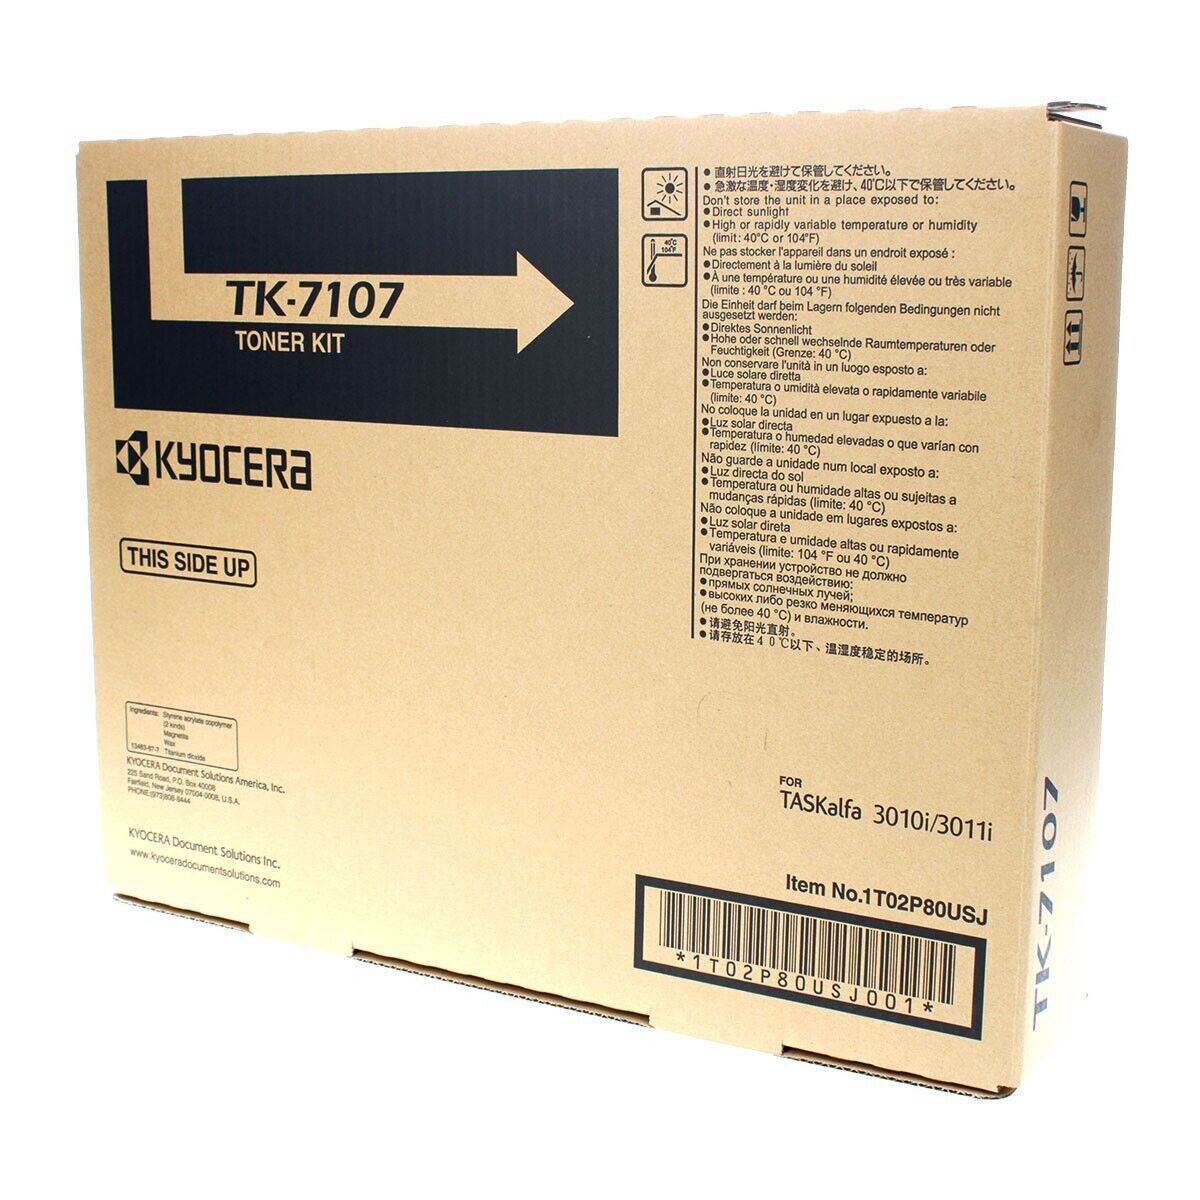 Kyocera Mita 1T02P80USJ, TK-7107 OEM Toner Black 20K Yield for use in